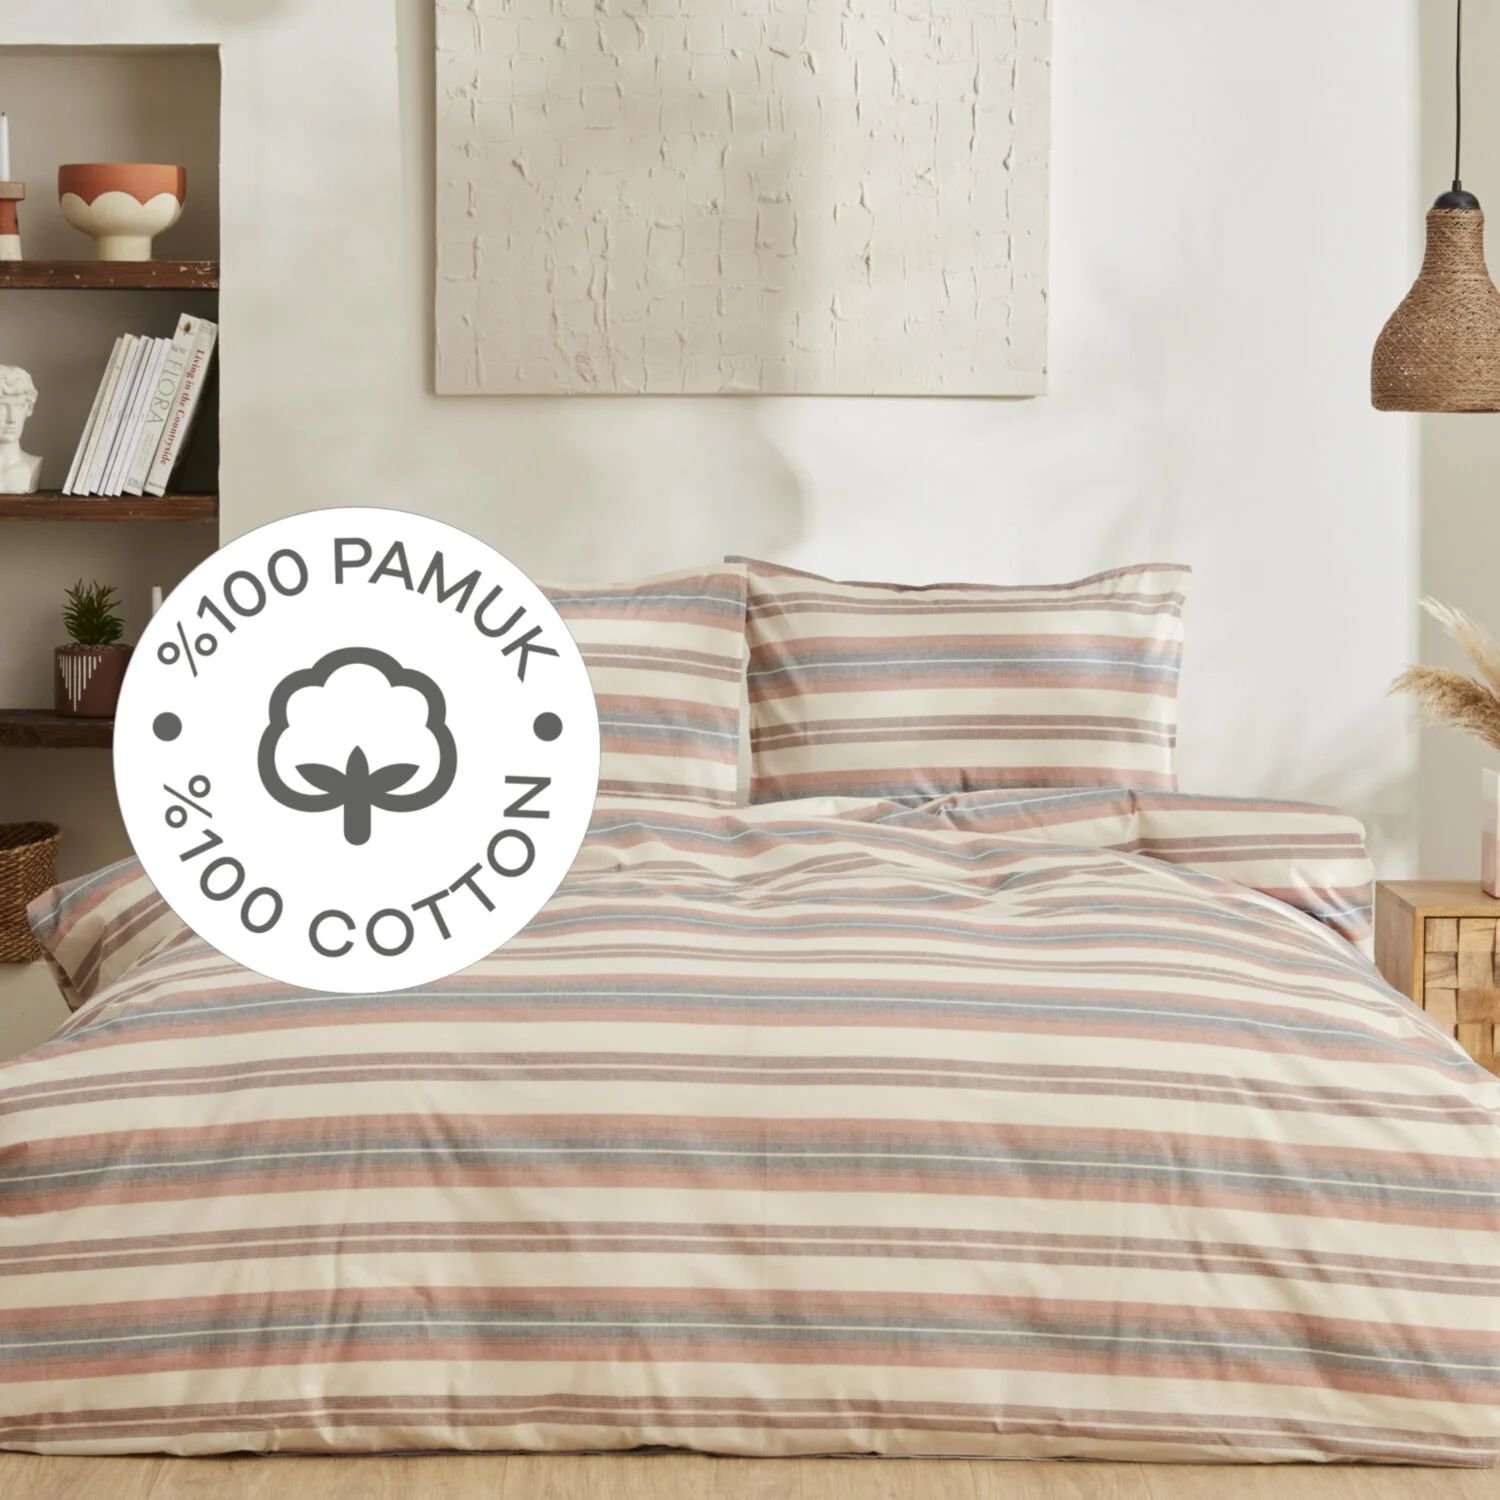 комплект постельного белья с вышивкой karaca home Комплект постельного белья Karaca Home Tahara, терракотовый